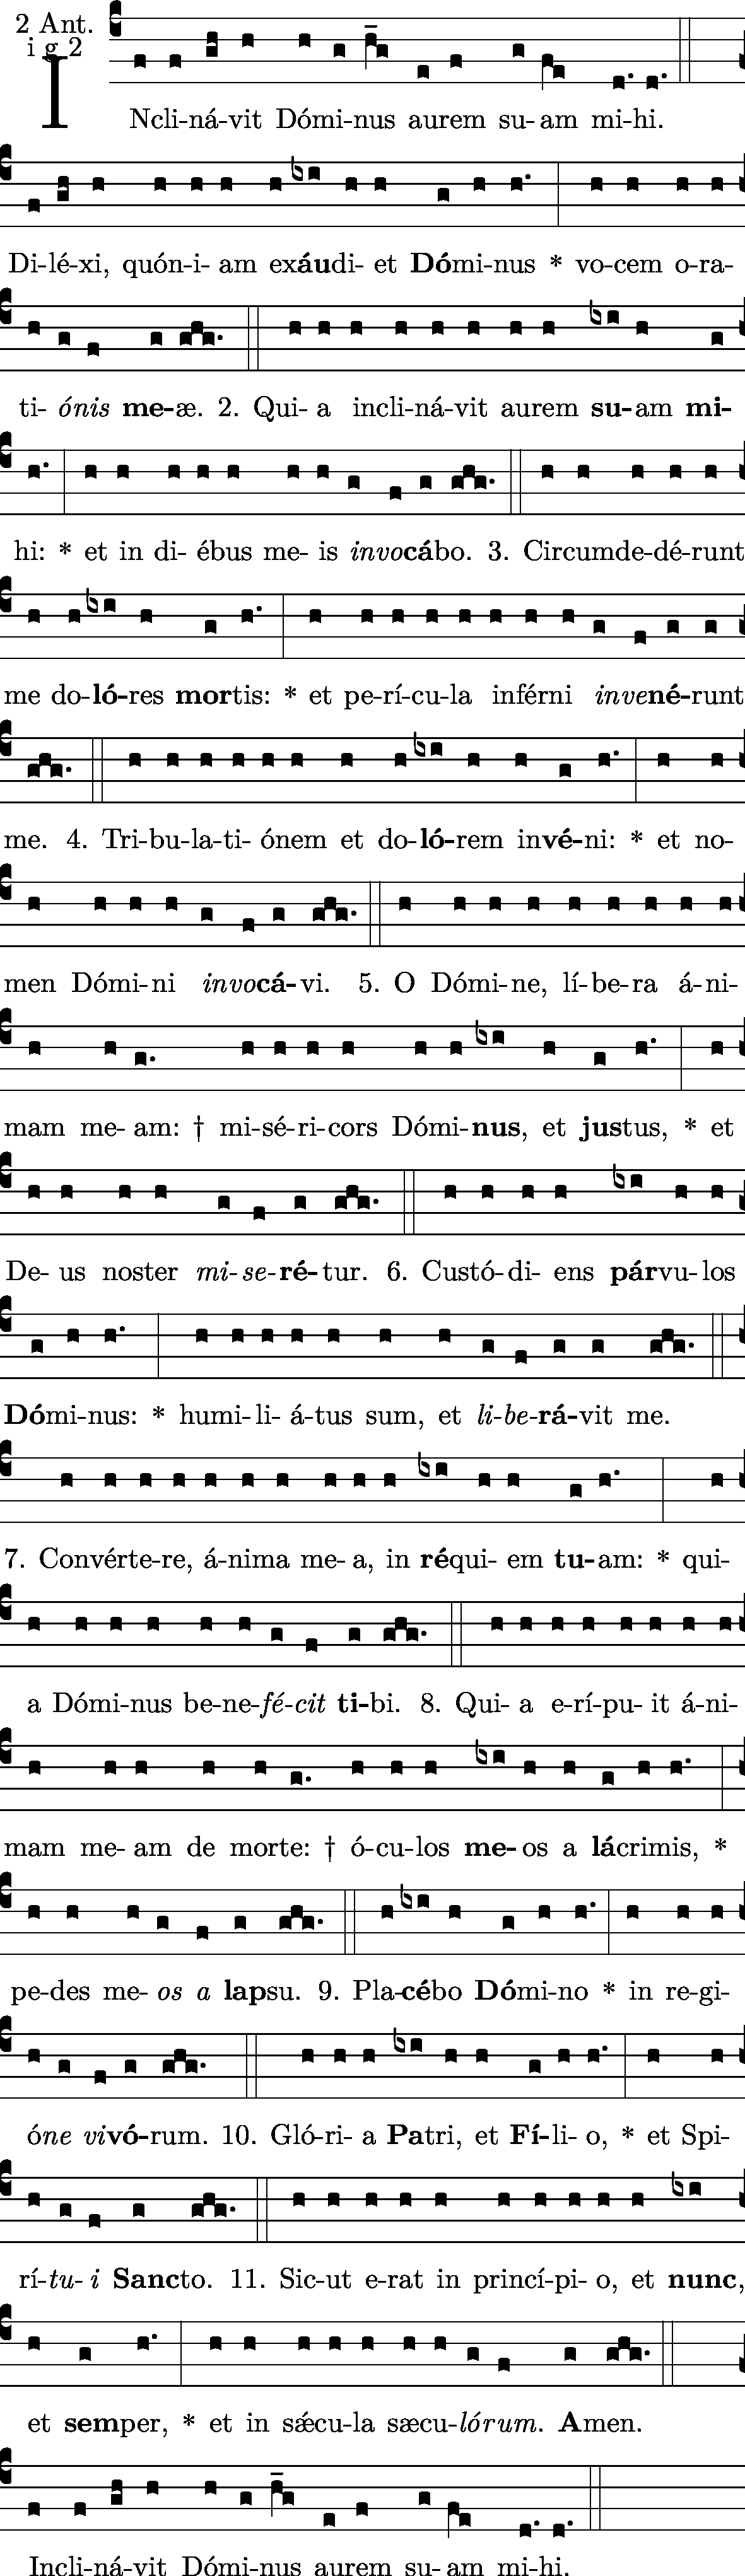 Neumz: Vesperas - Antiphona: Inclinavit Dominus 1g2 - Vesp Fer 2 (a capella)